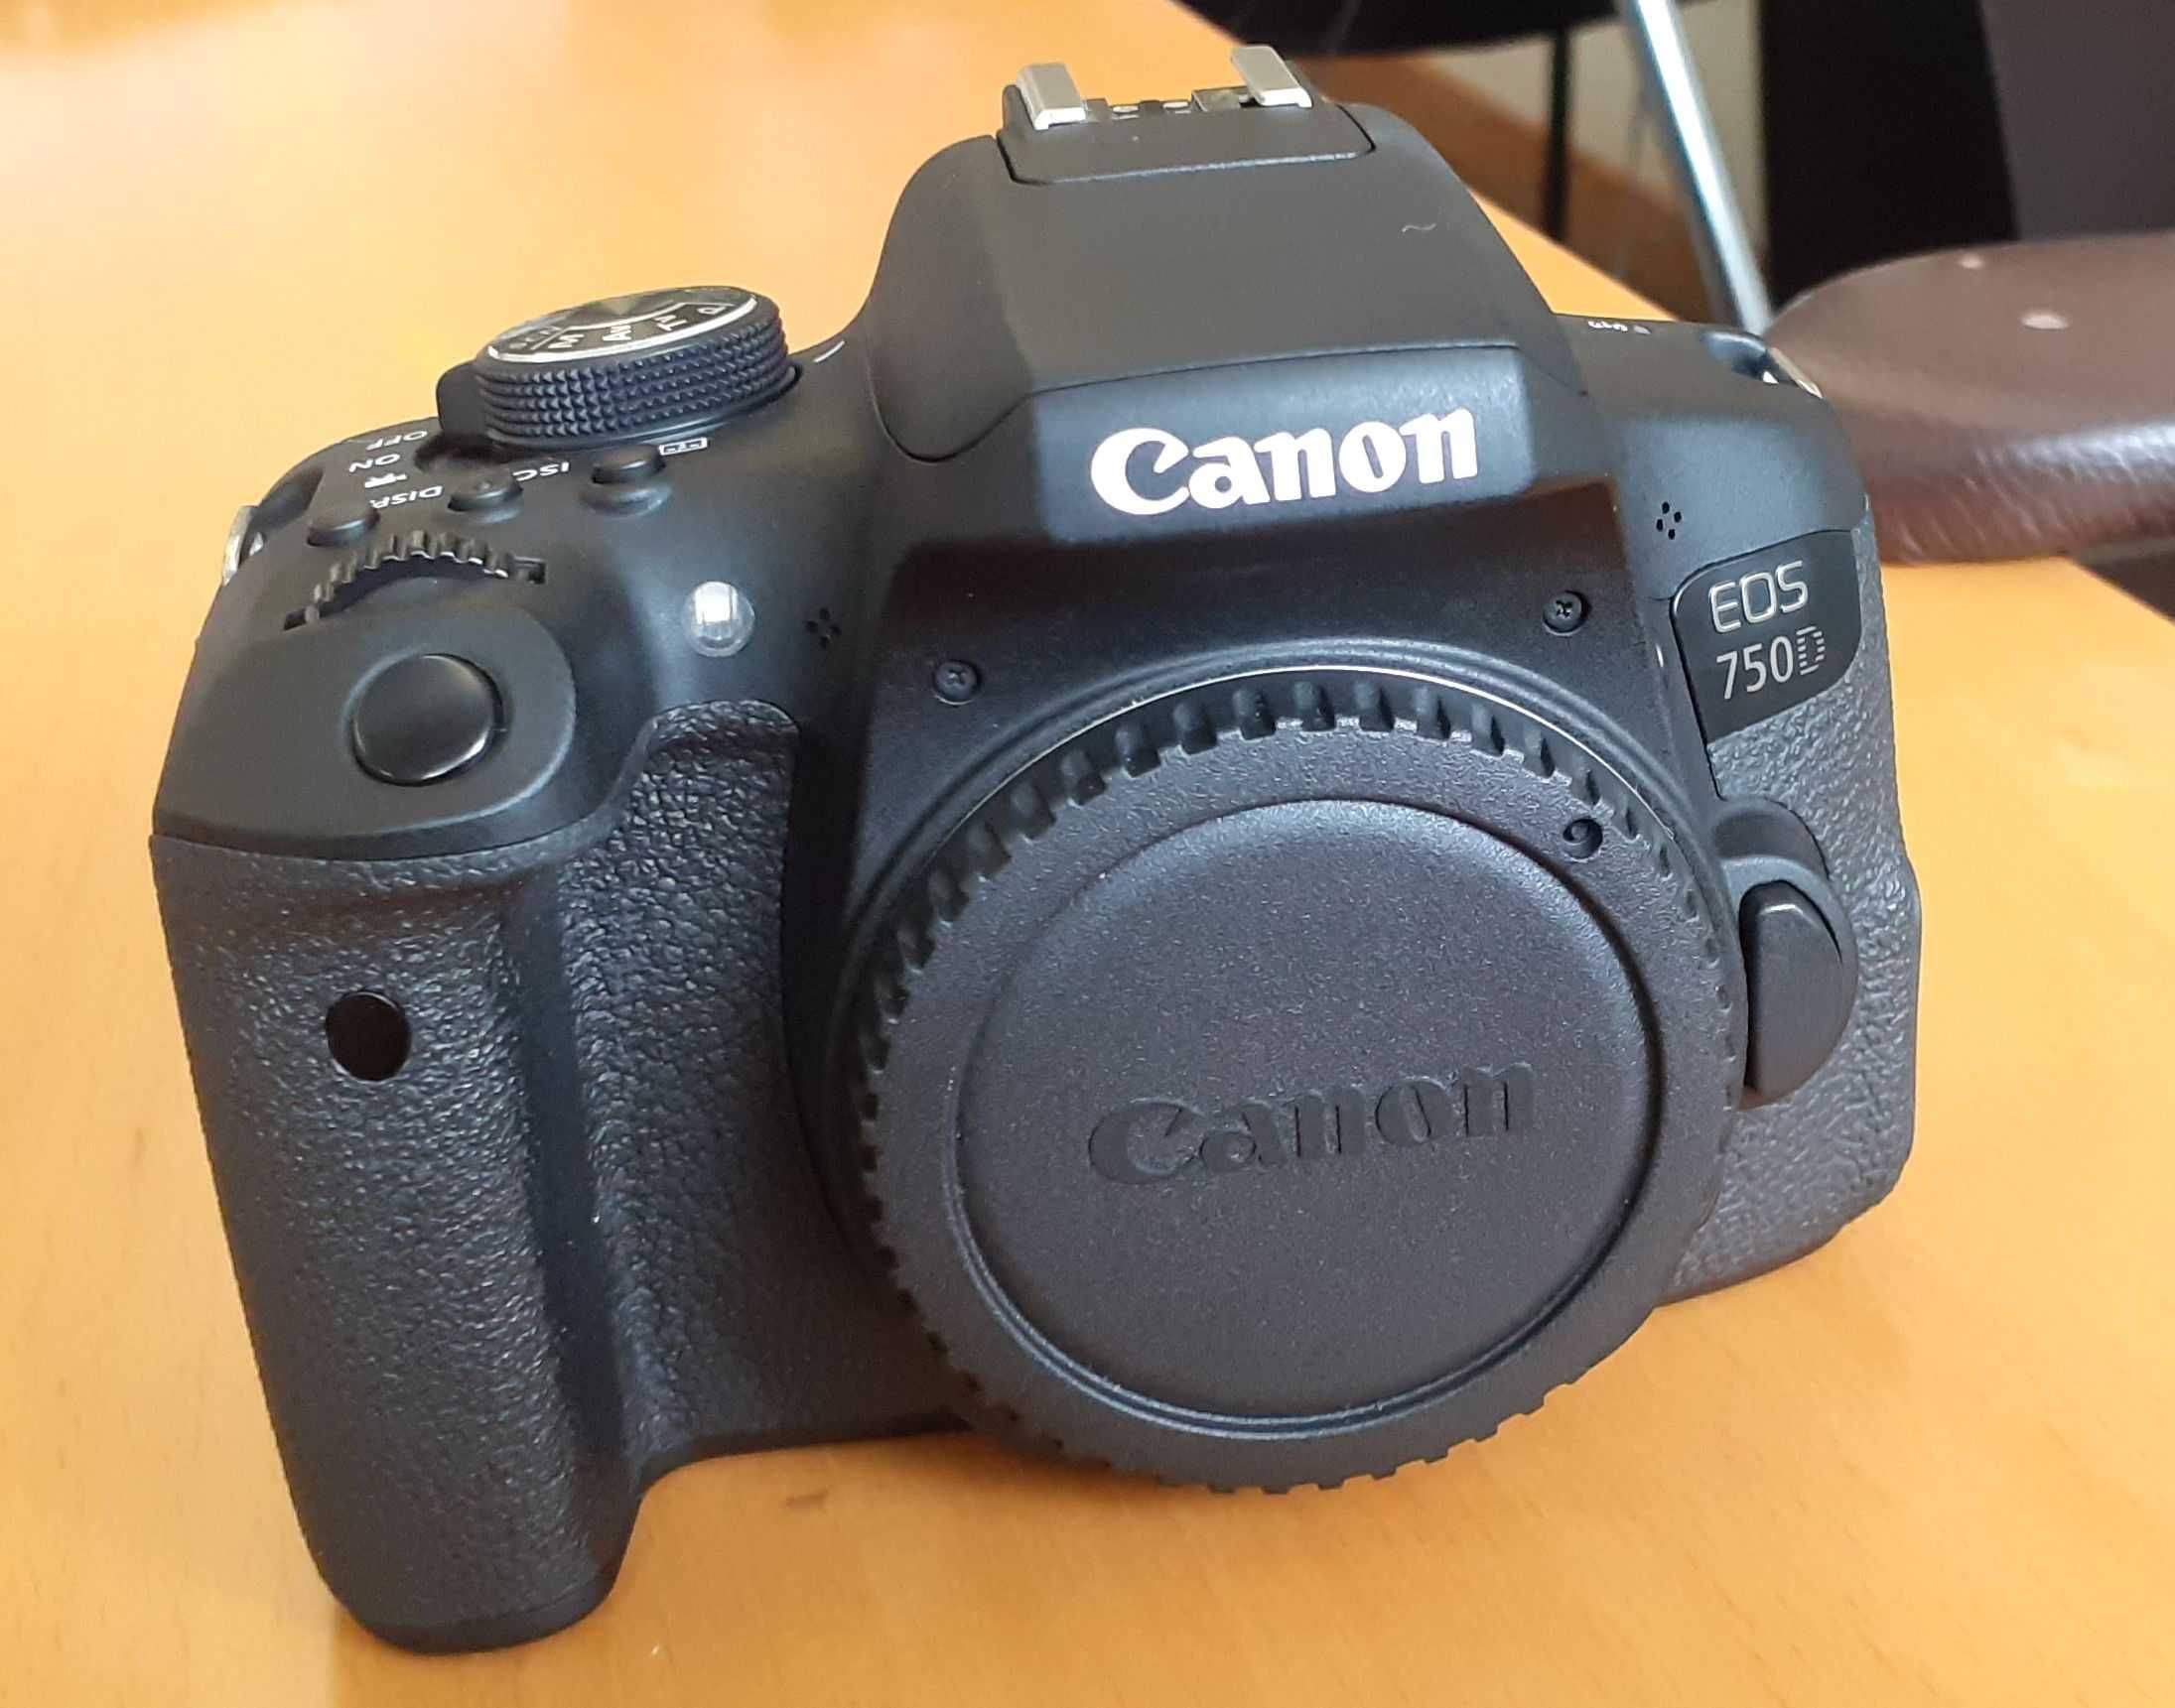 Canon EOS 750D + lente 18-55mm IS STM | Equipamento como novo